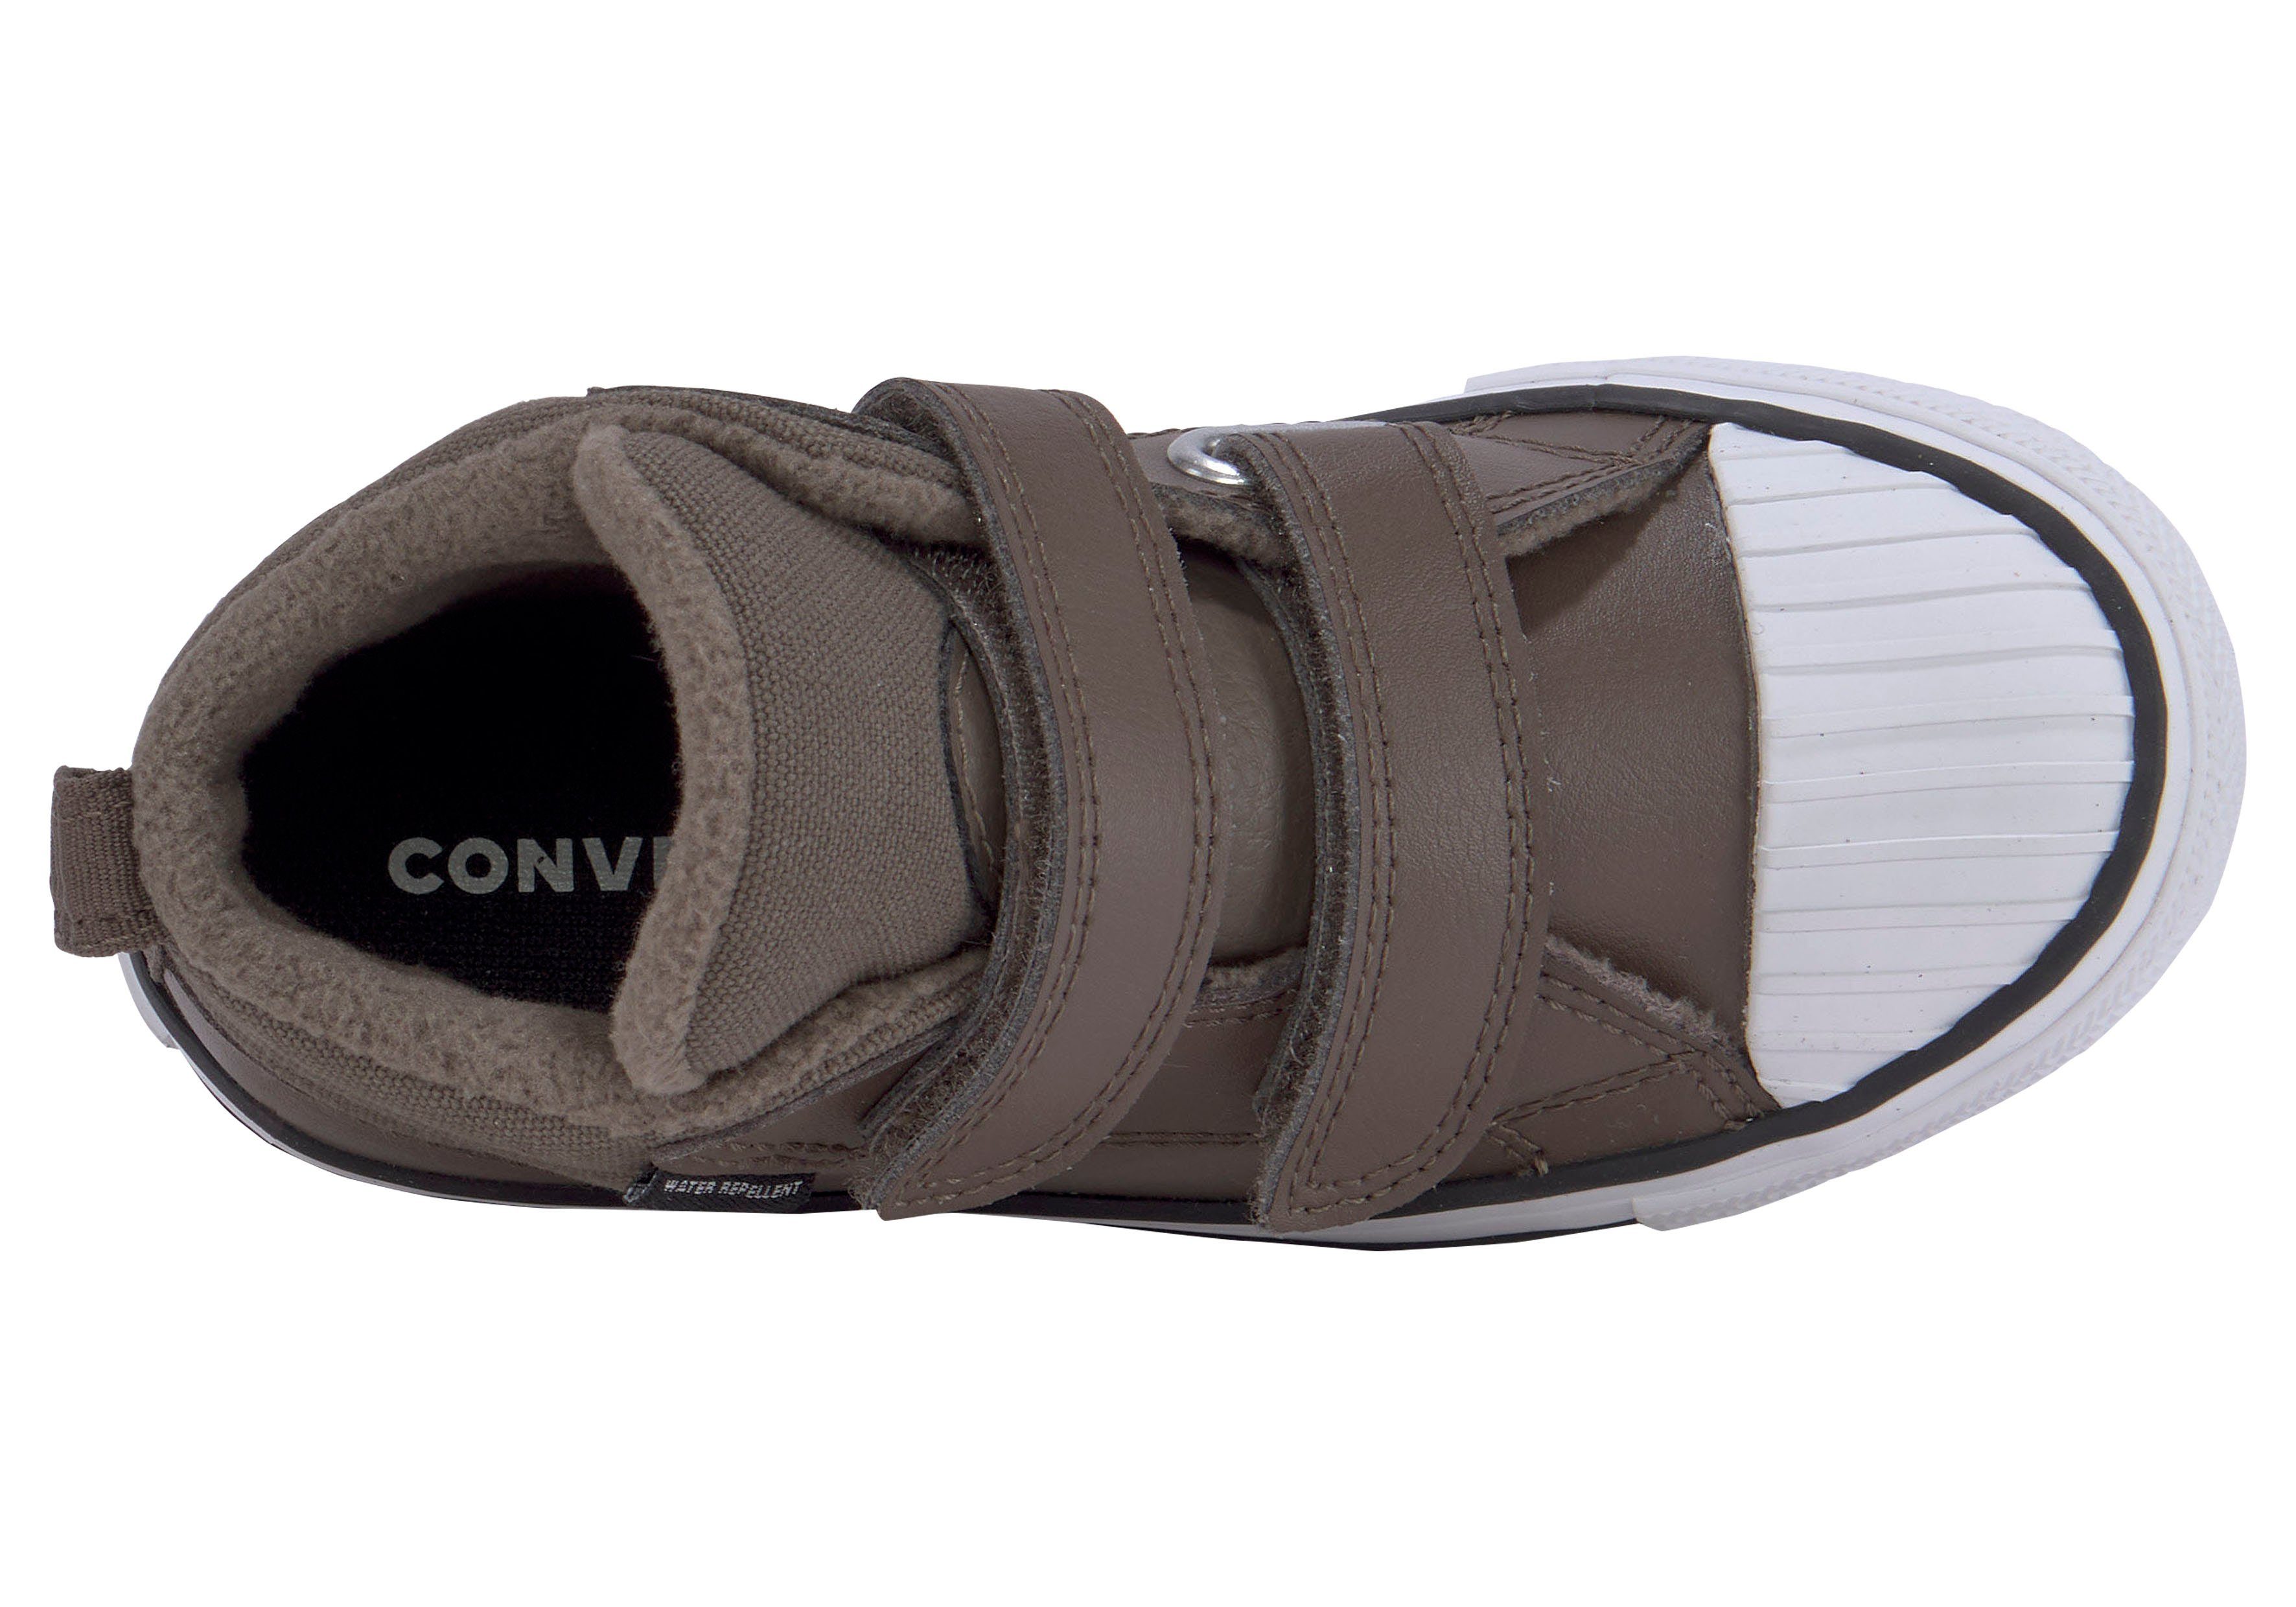 STAR Converse BOOT Sneakerboots CHUCK ALL mit BERKSHIRE TAYLOR Klettverschluss